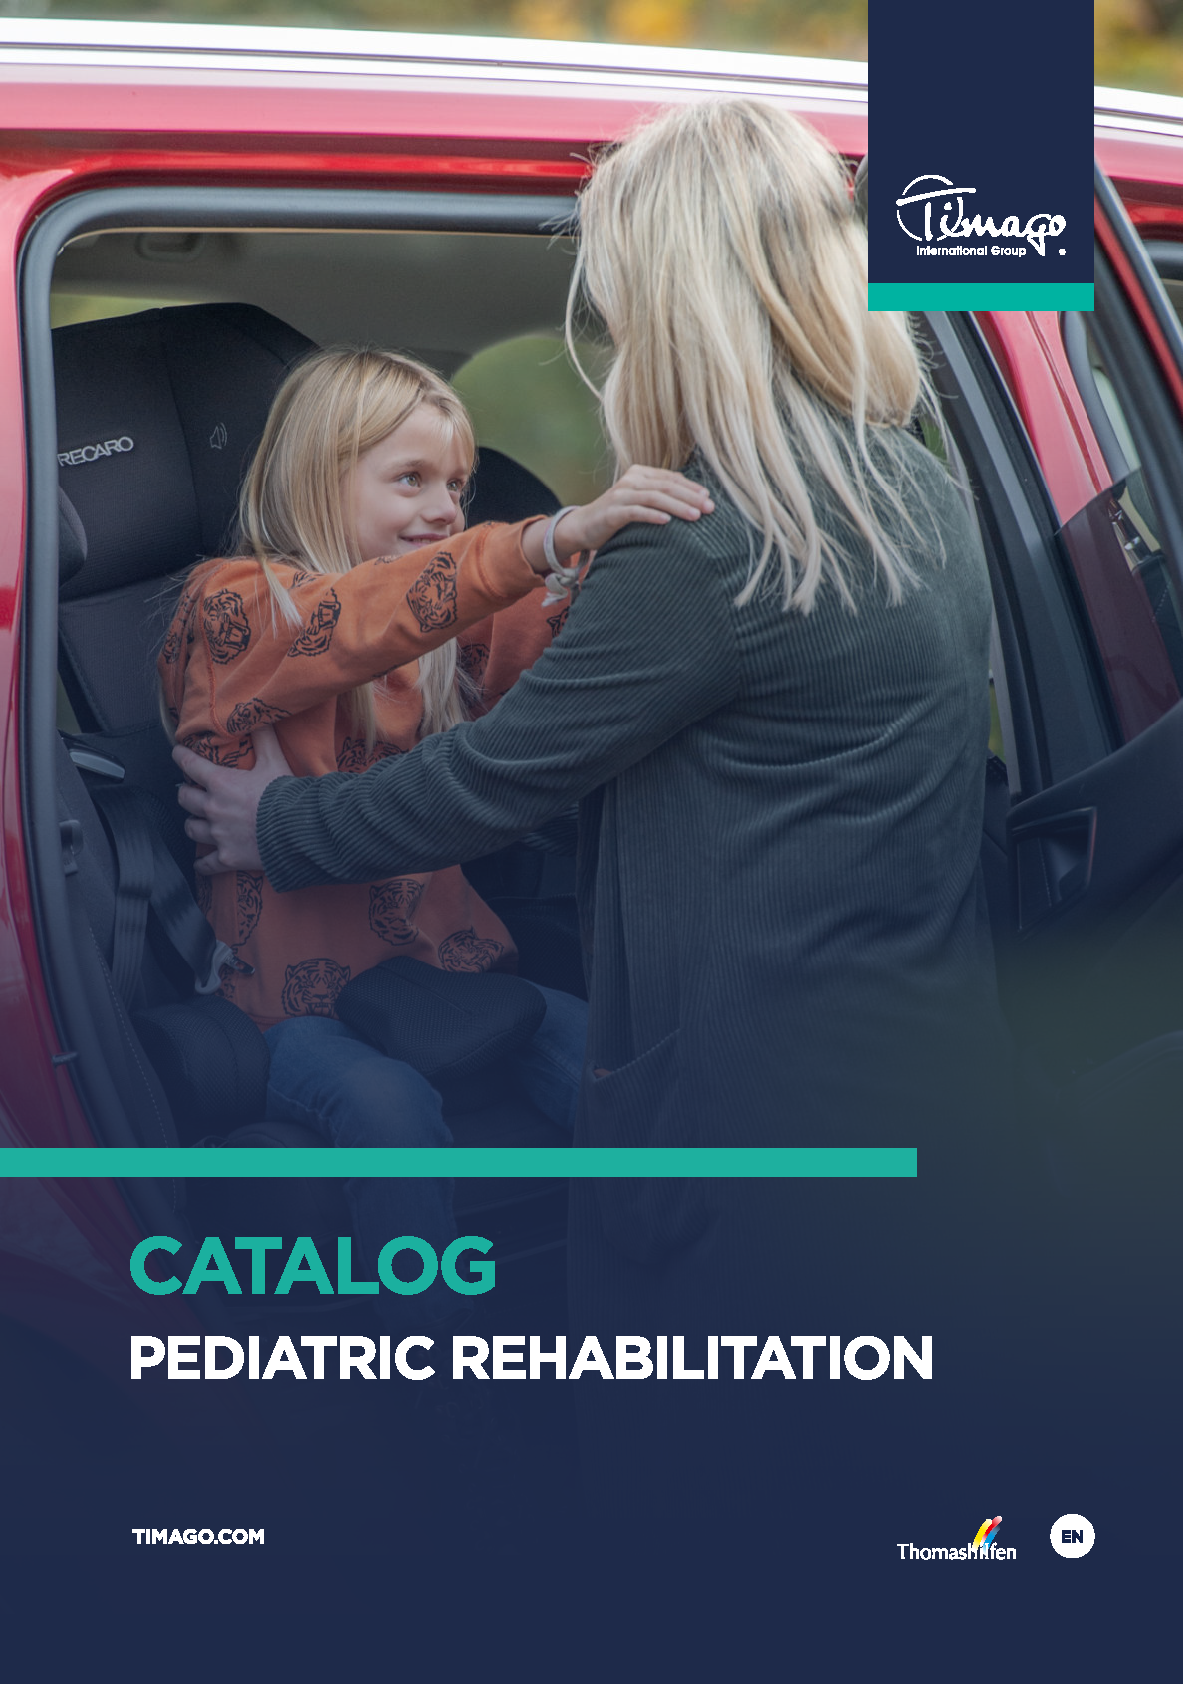 Pediatric rehabilitation